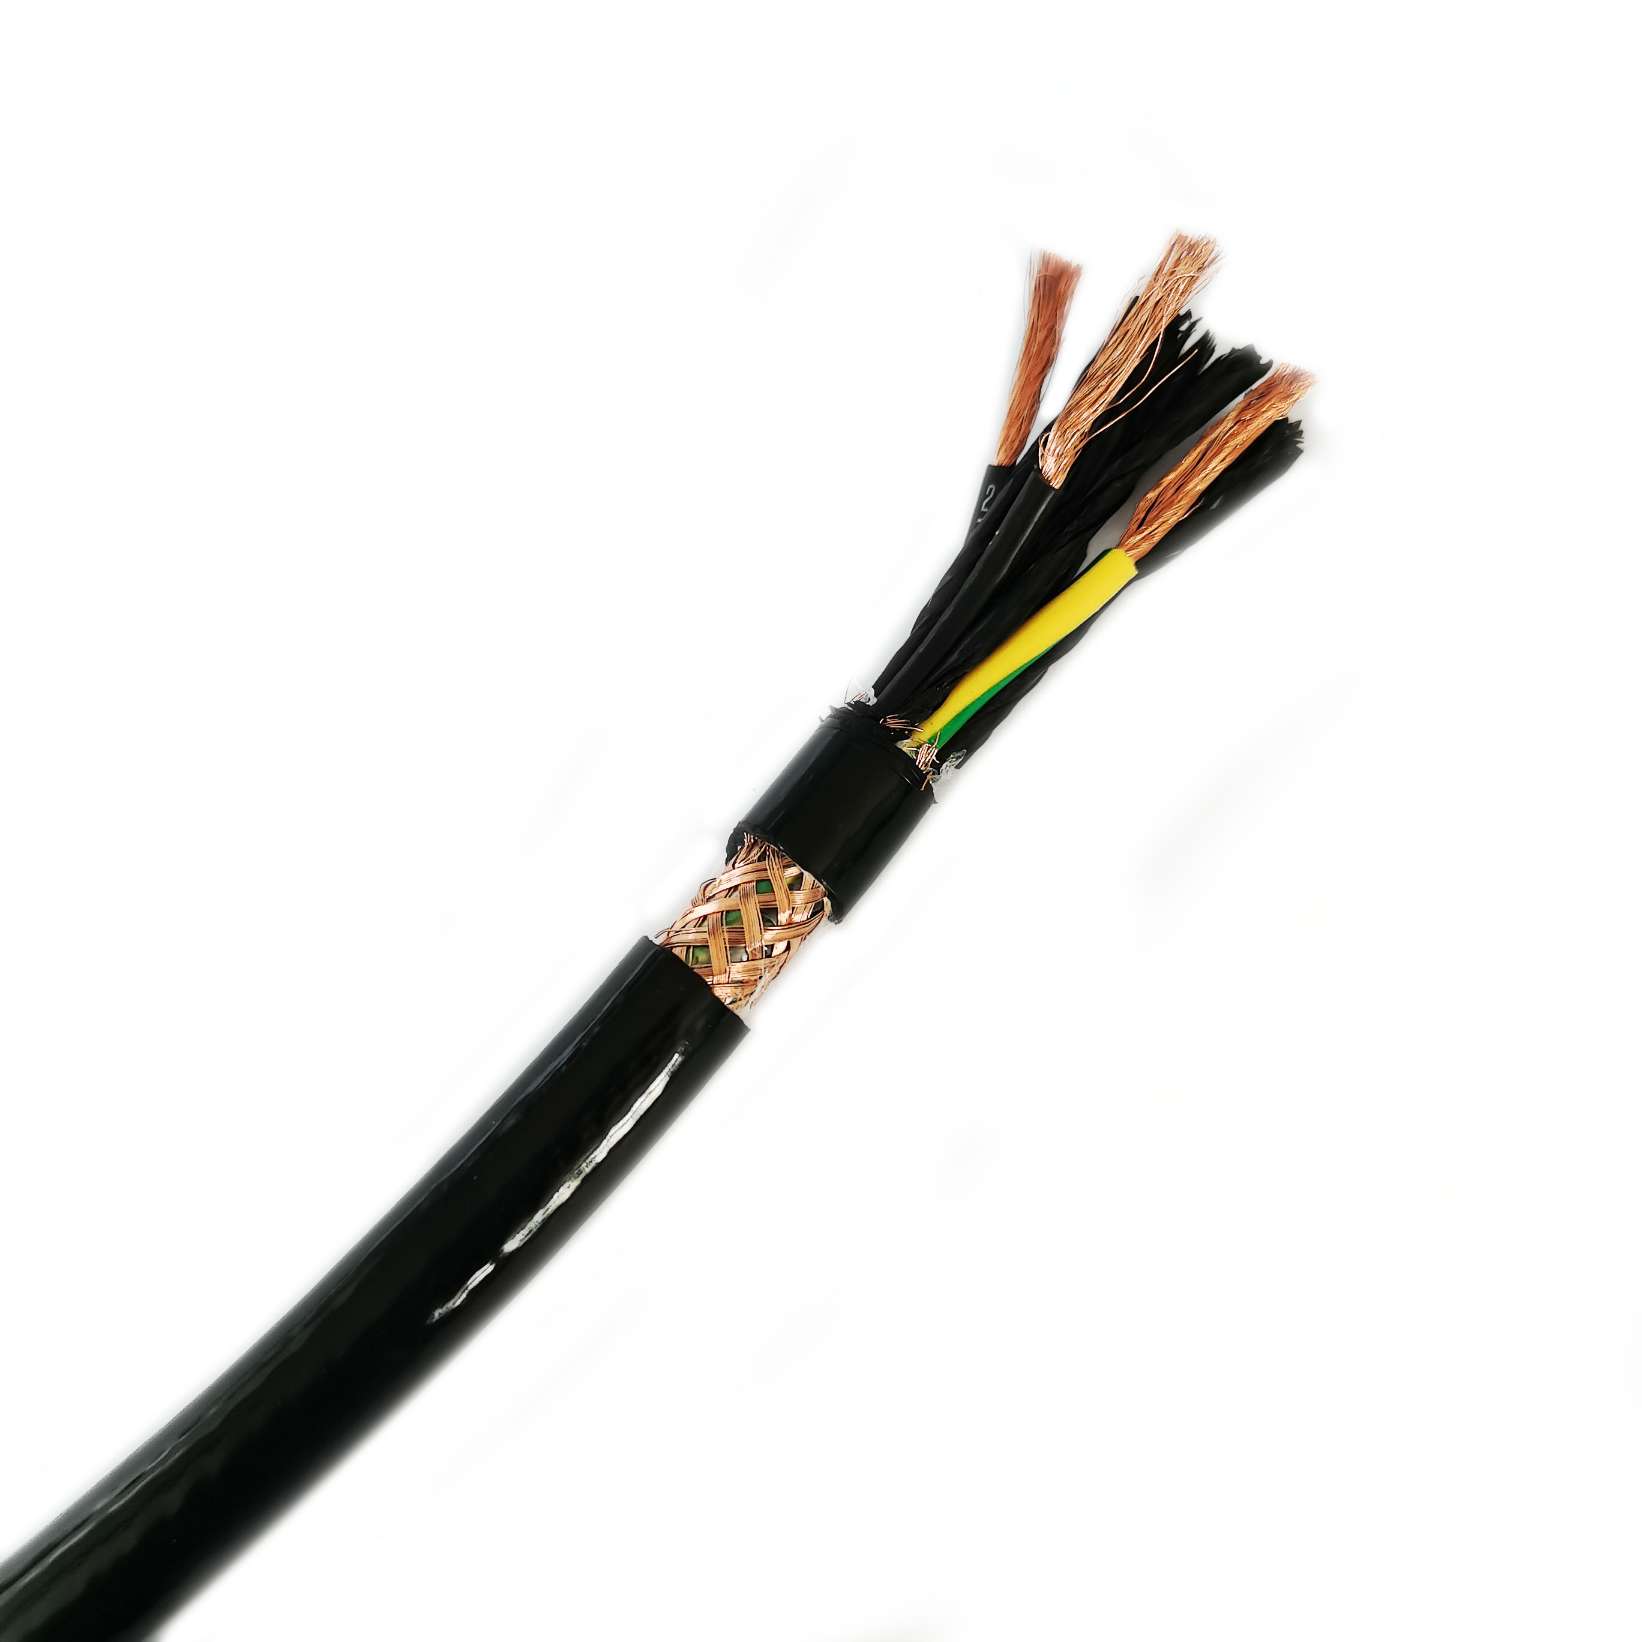 ¿Cuáles son las ventajas de utilizar cables PUR frente a otros tipos de cables?